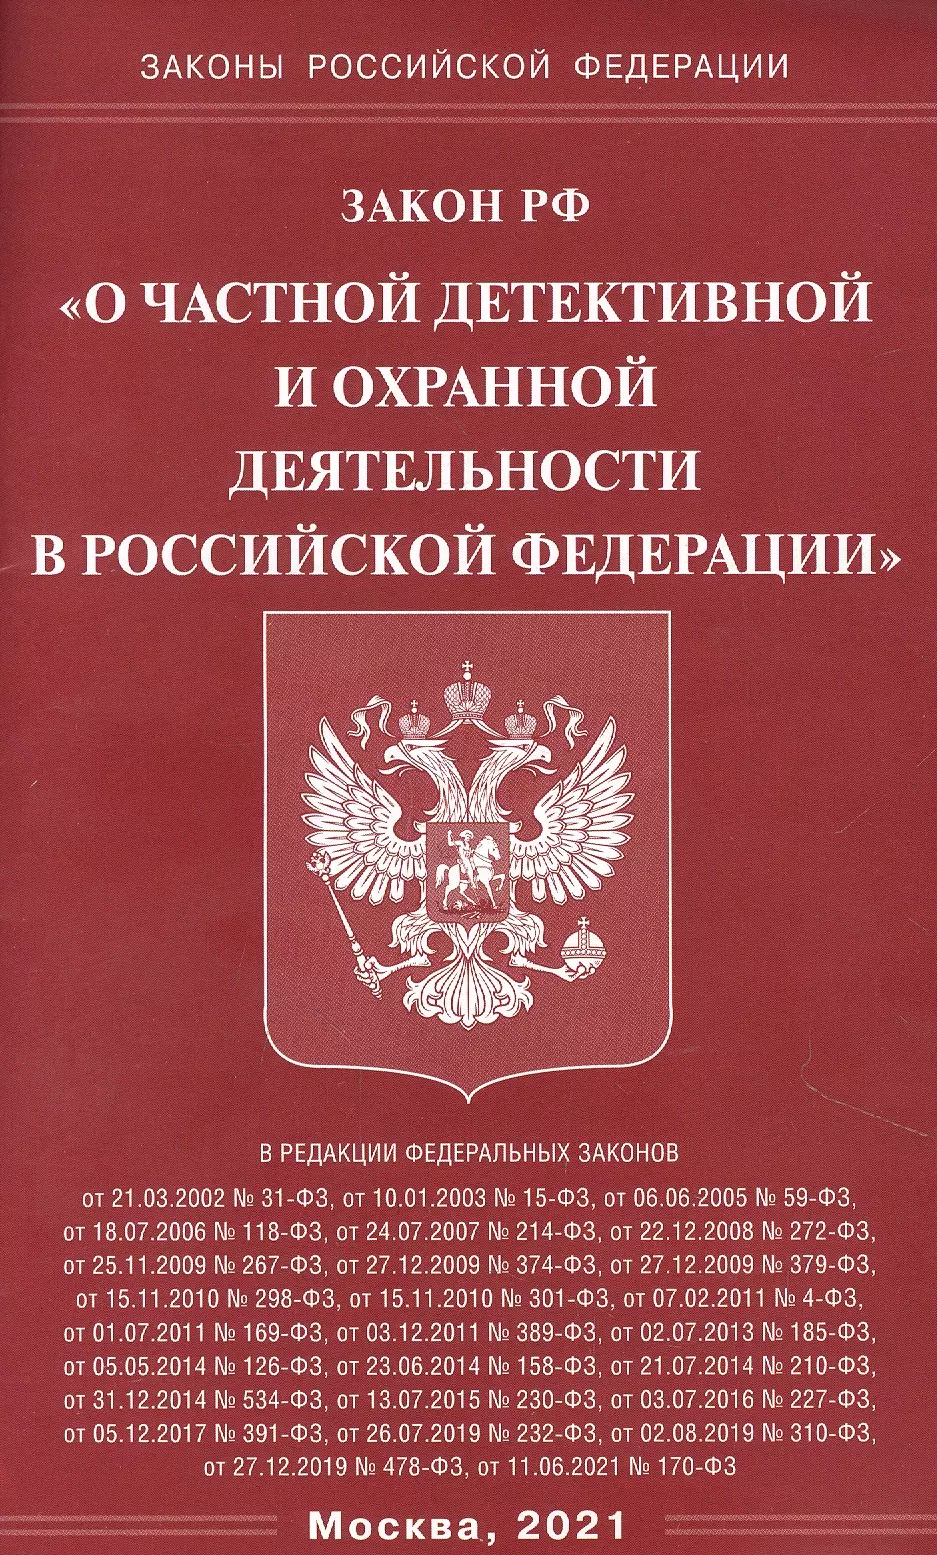  - Закон Российской Федерации "О частной детективной и охранной деятельности в Российской Федерации"